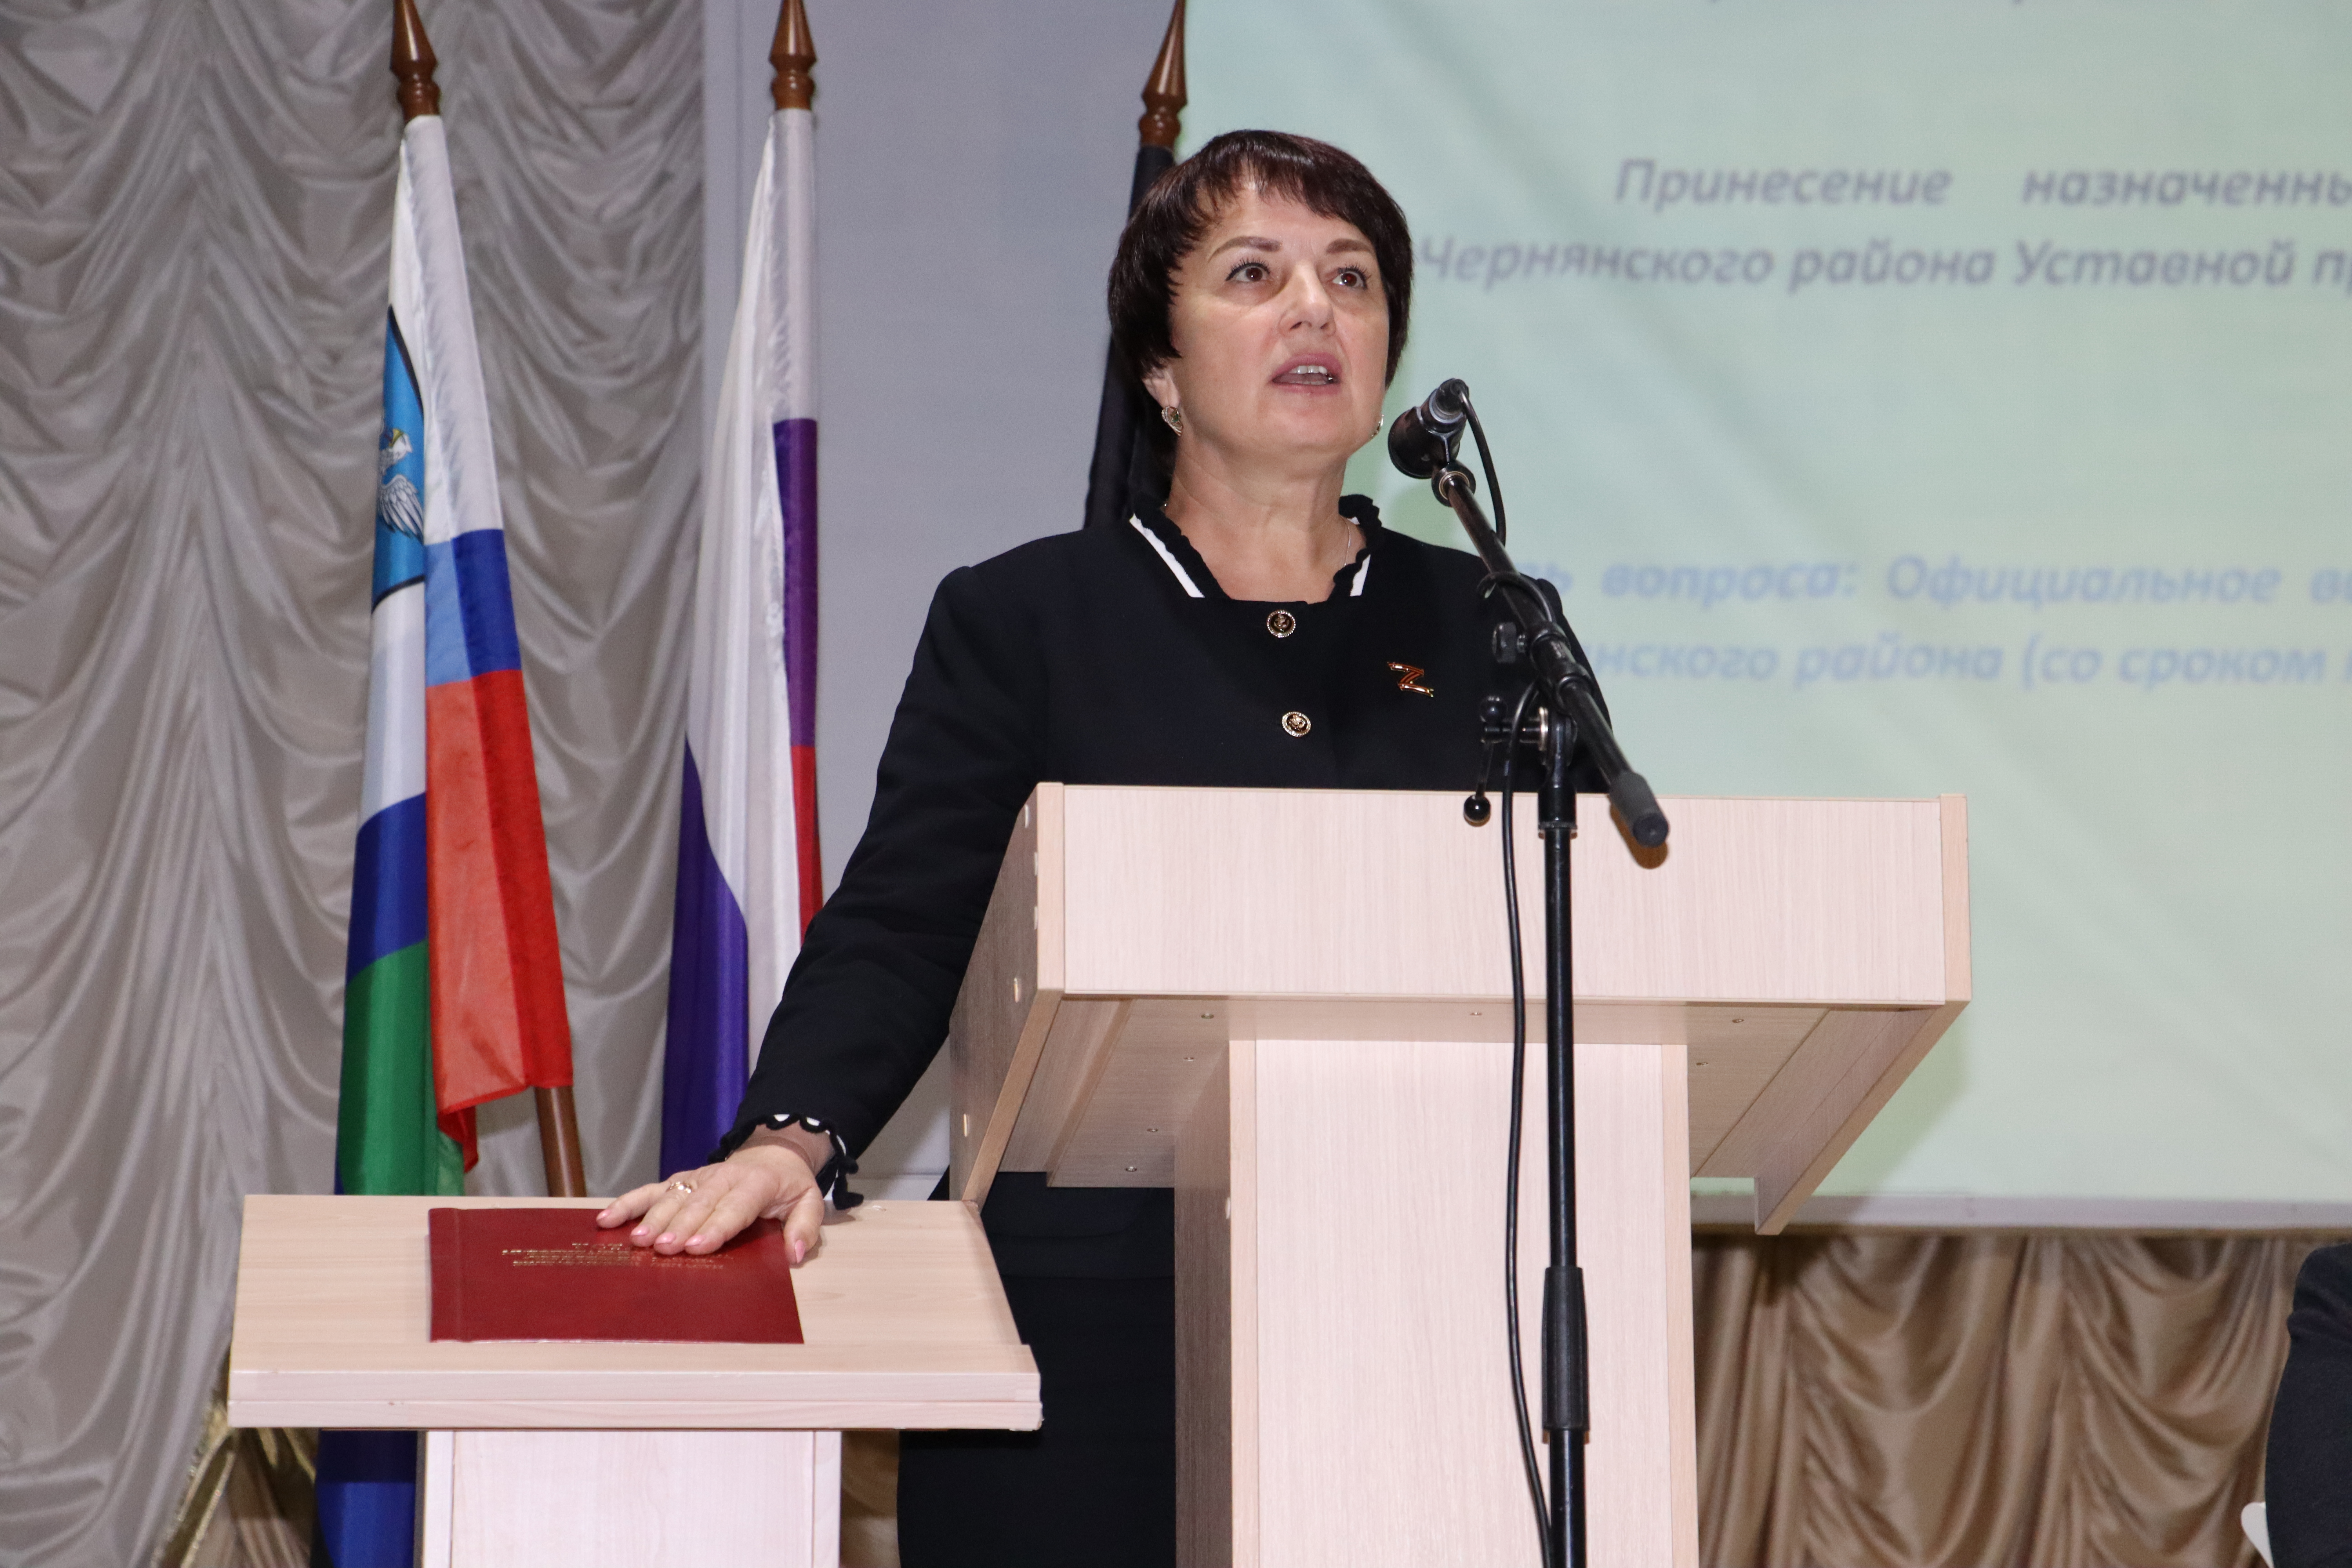 Сегодня, 22 ноября, глава Чернянского района Татьяна Петровна Круглякова официально вступила в должность